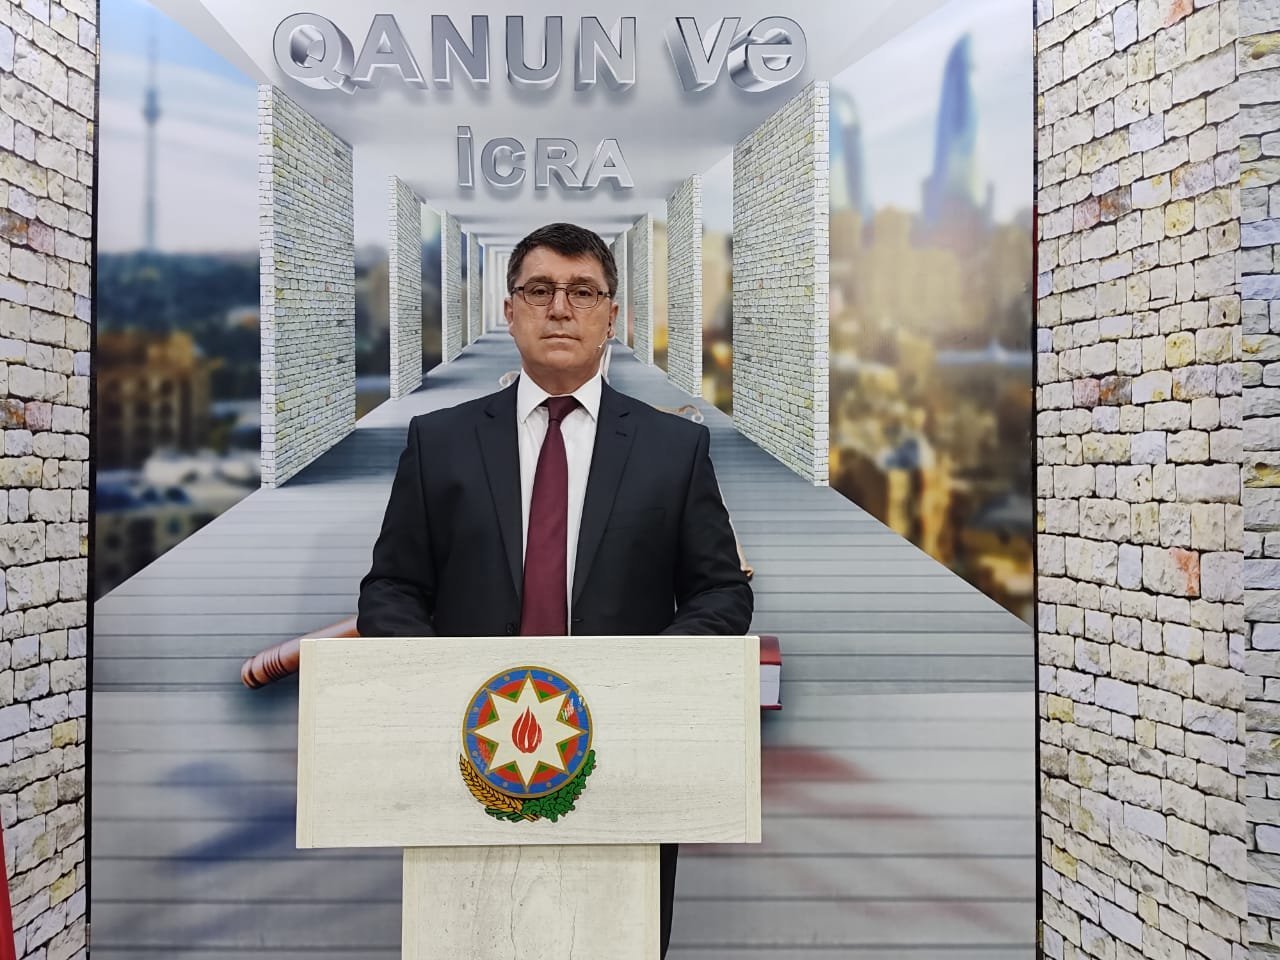 Əkbər Yusifoğlunun təqdimatında "Qanun və İcra” verlişi